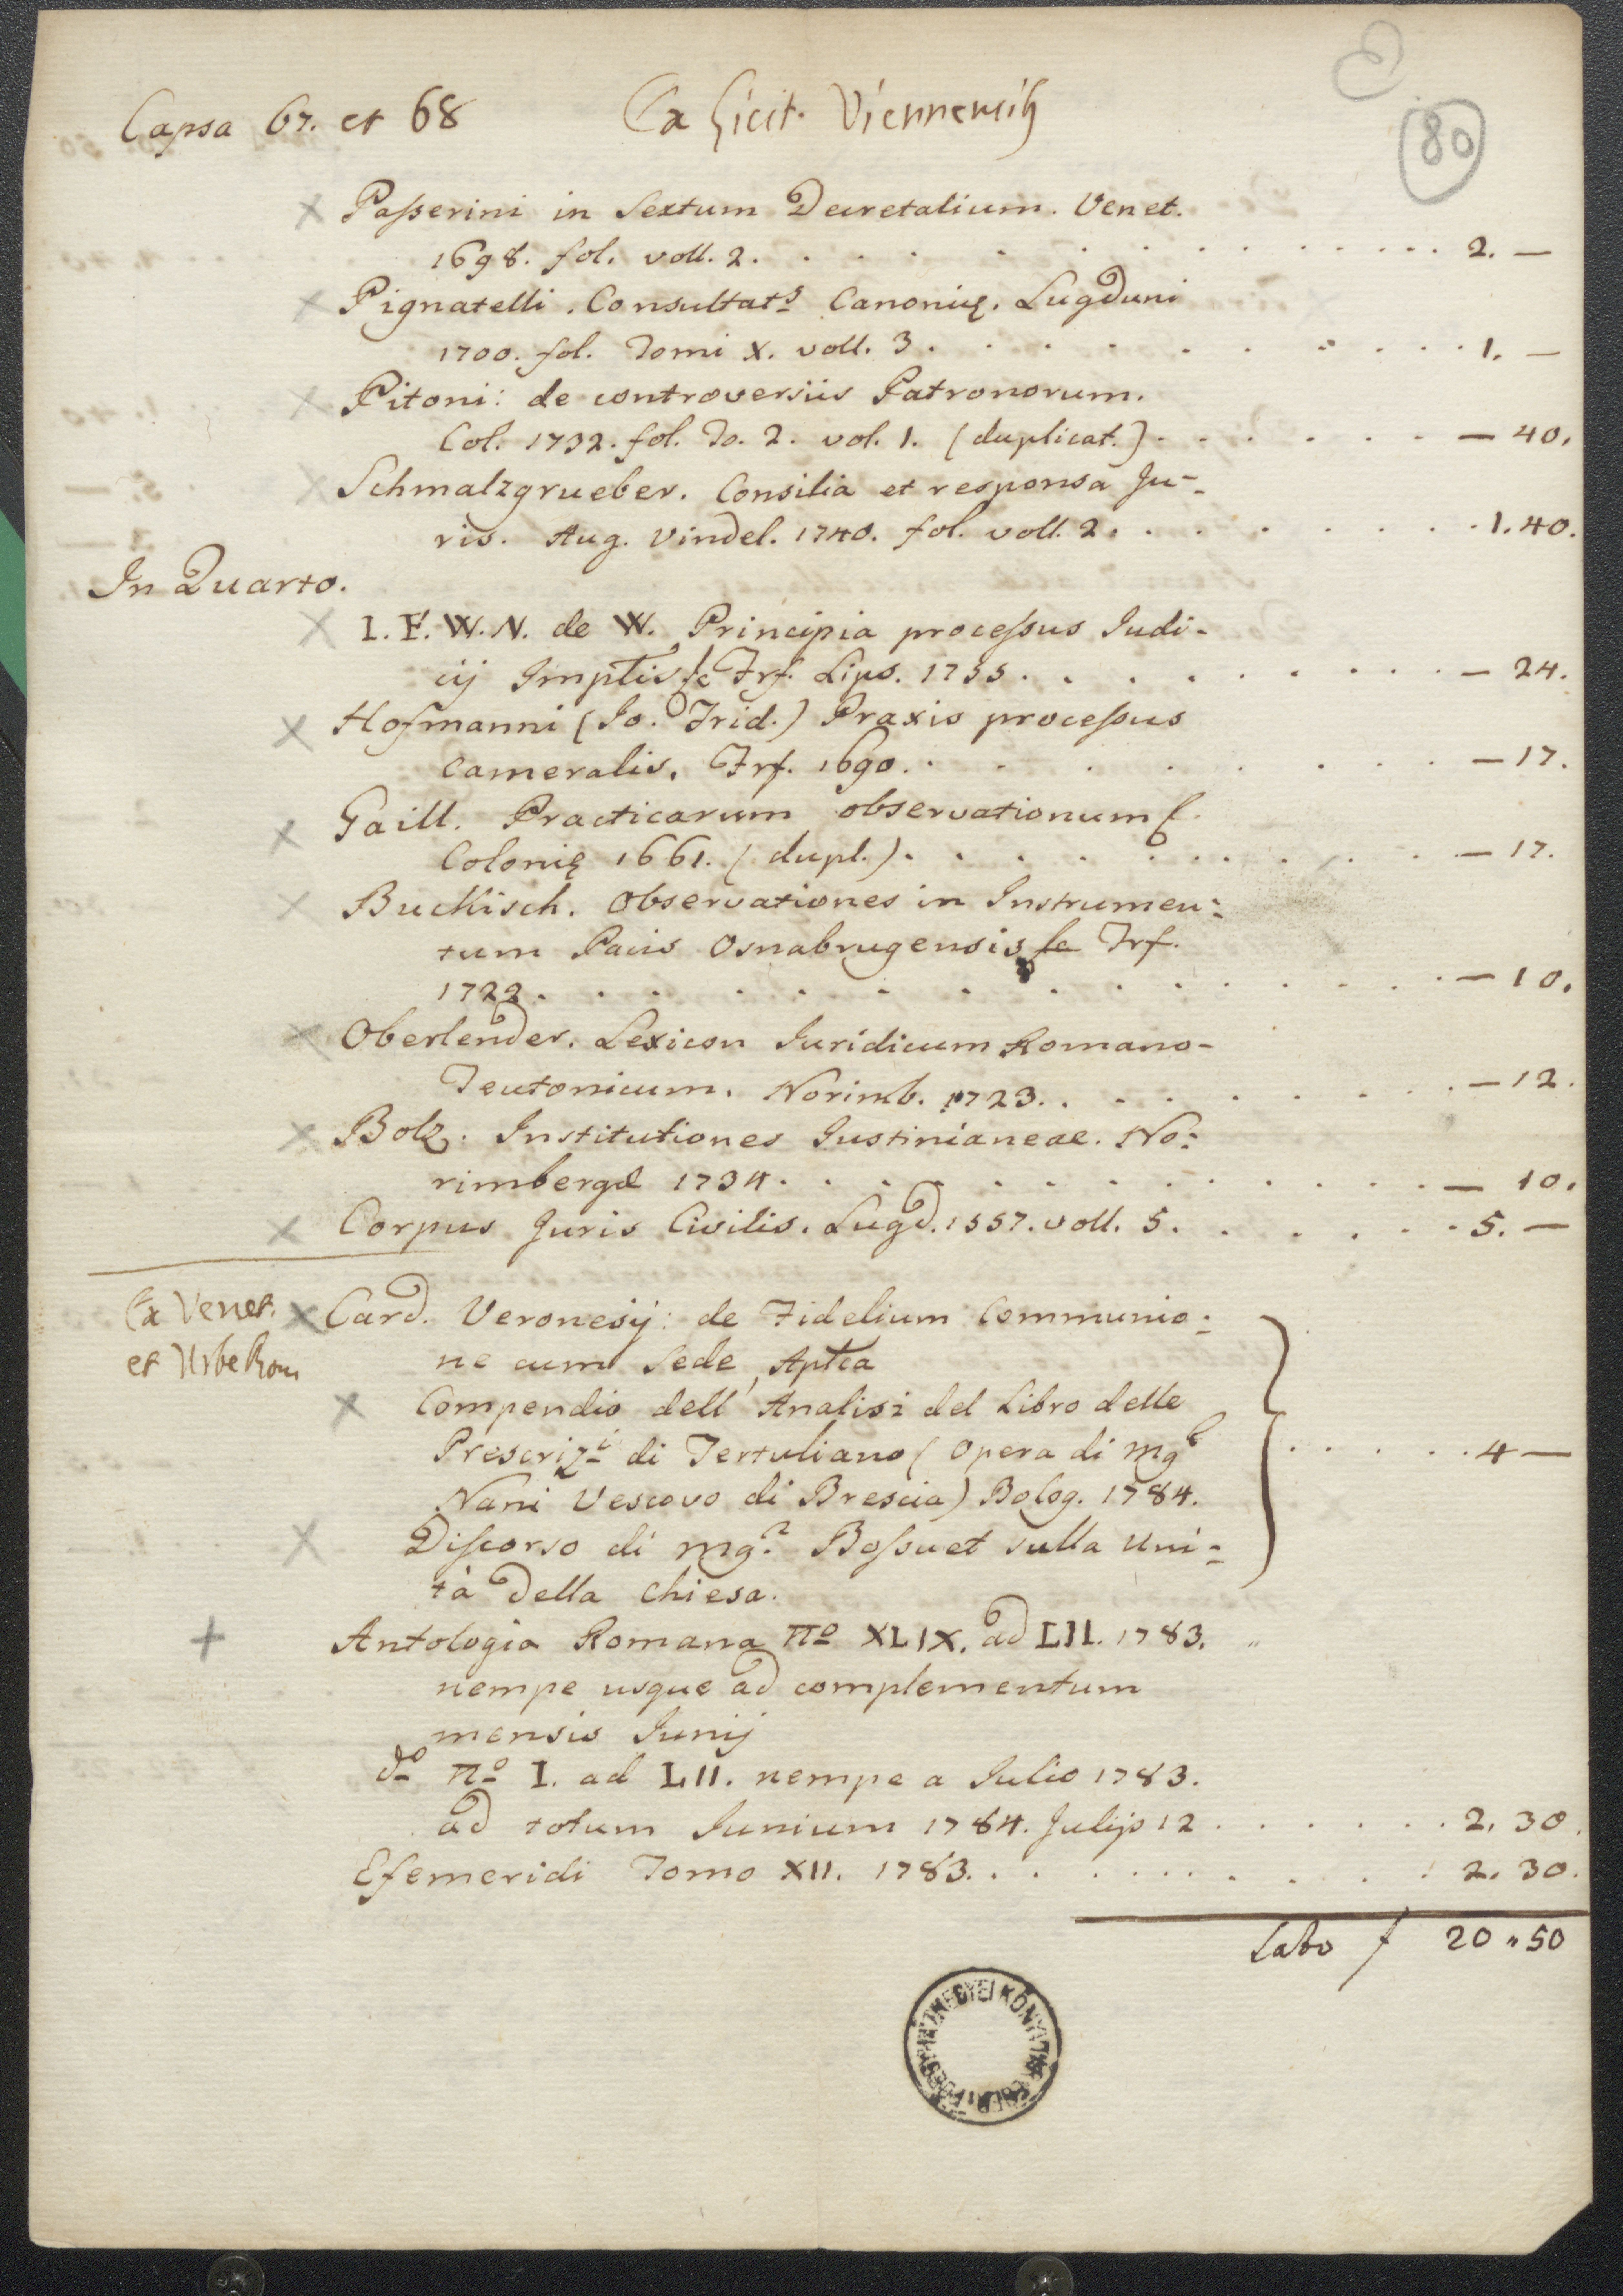 Bécsben 1785. május 18-án és 23-án tartott könyvaukciókon beszerzett könyvek jegyzéke